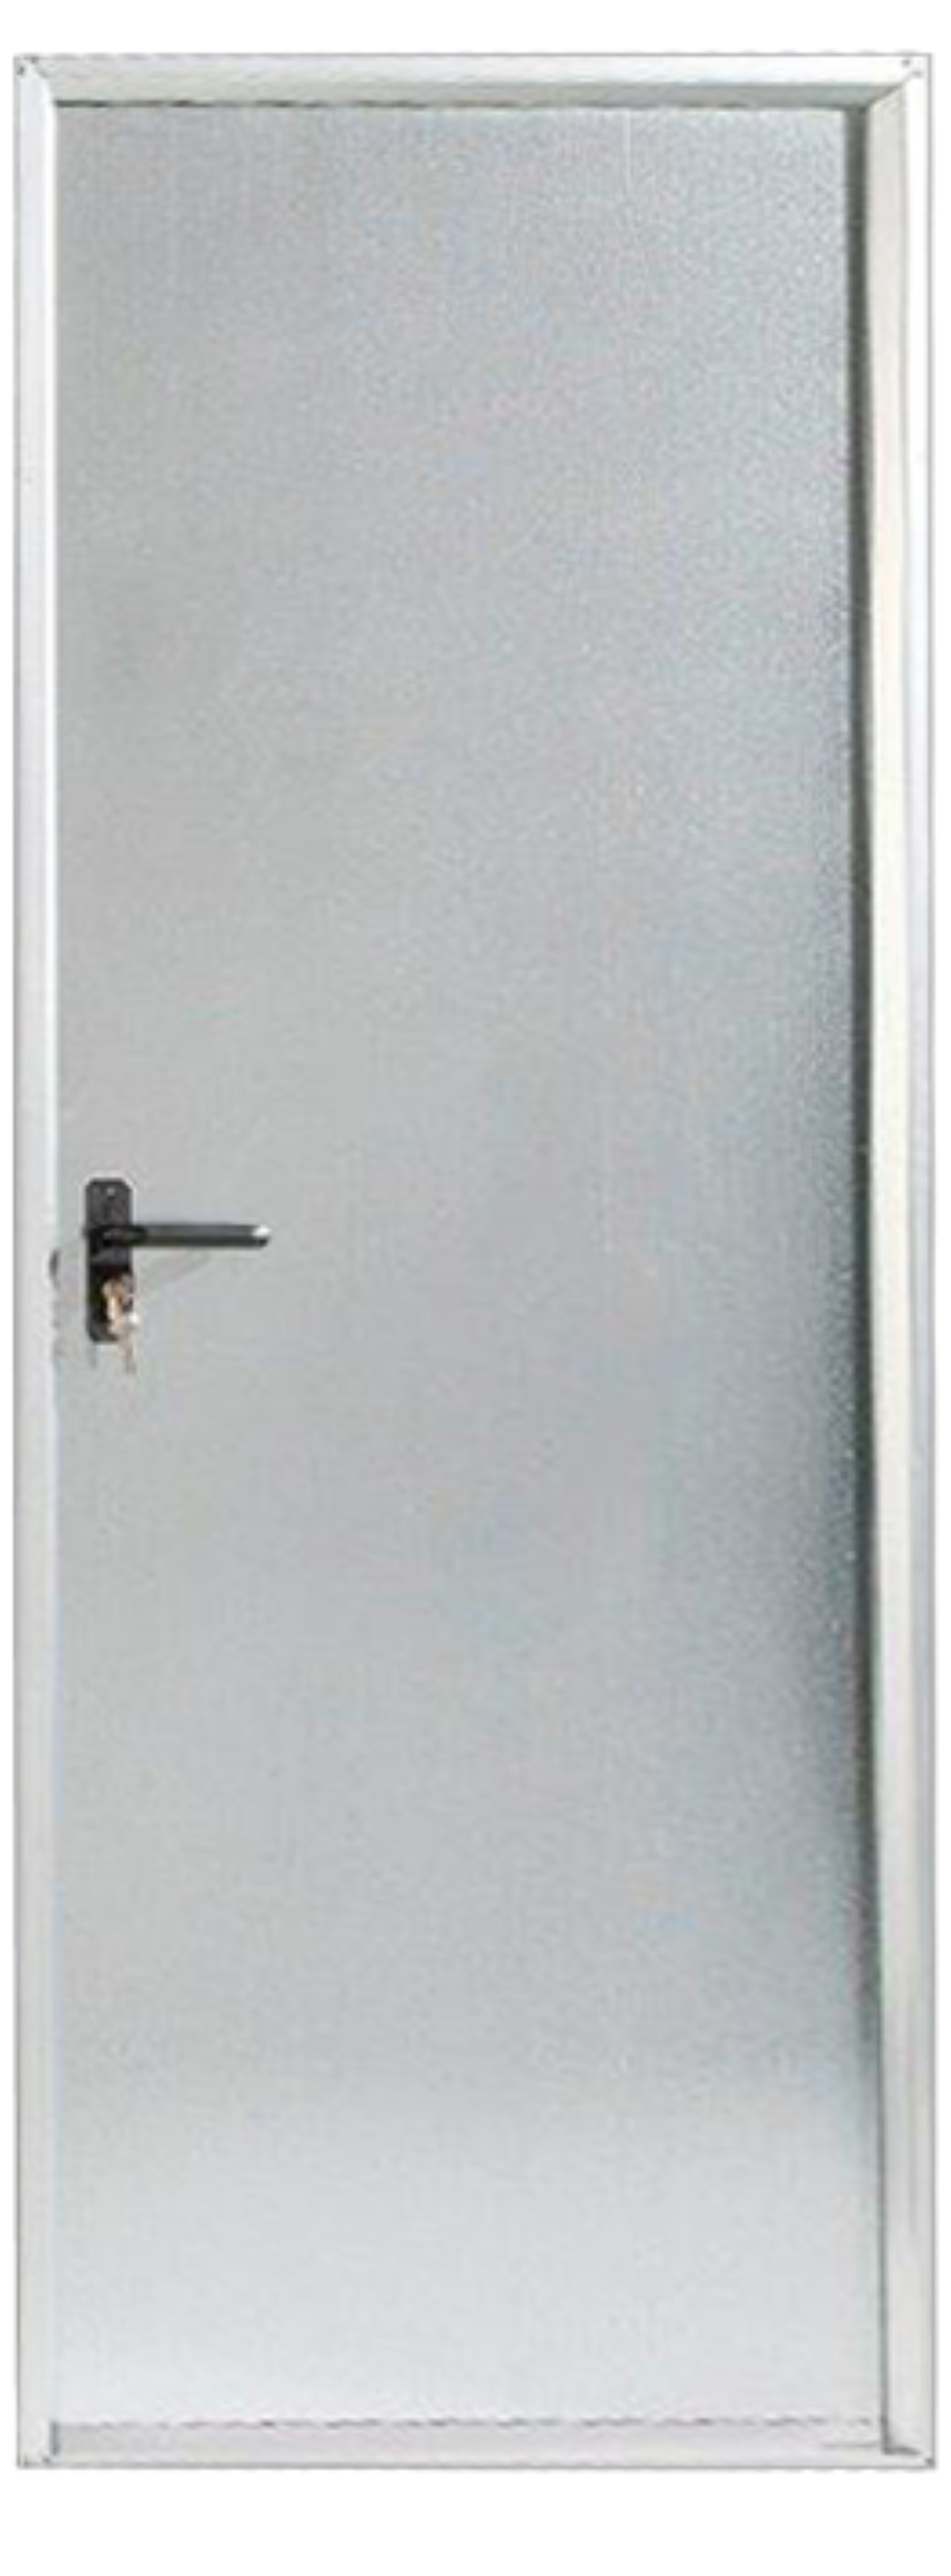 Puerta de trastero apertura derecha acero galvanizado de 200x89 cm